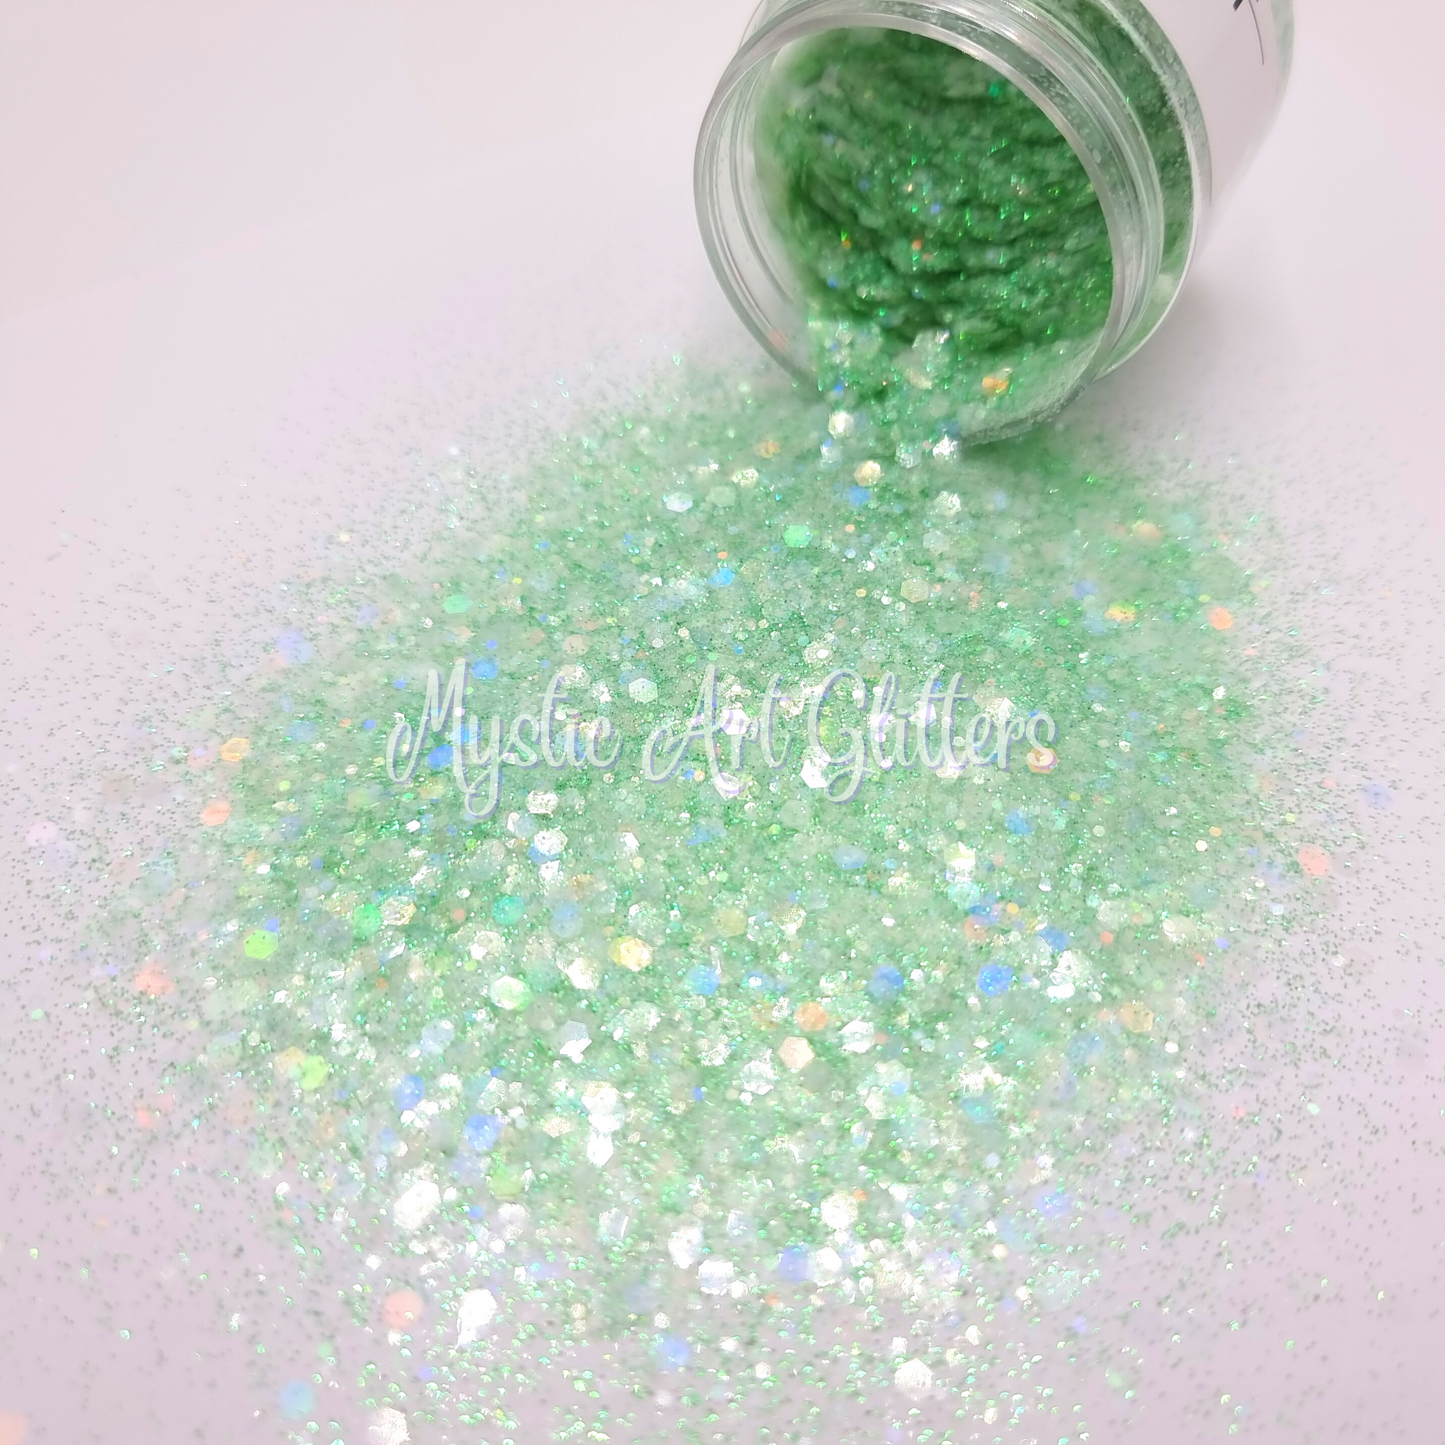 Green Honeydew Slushie Glitter Mix